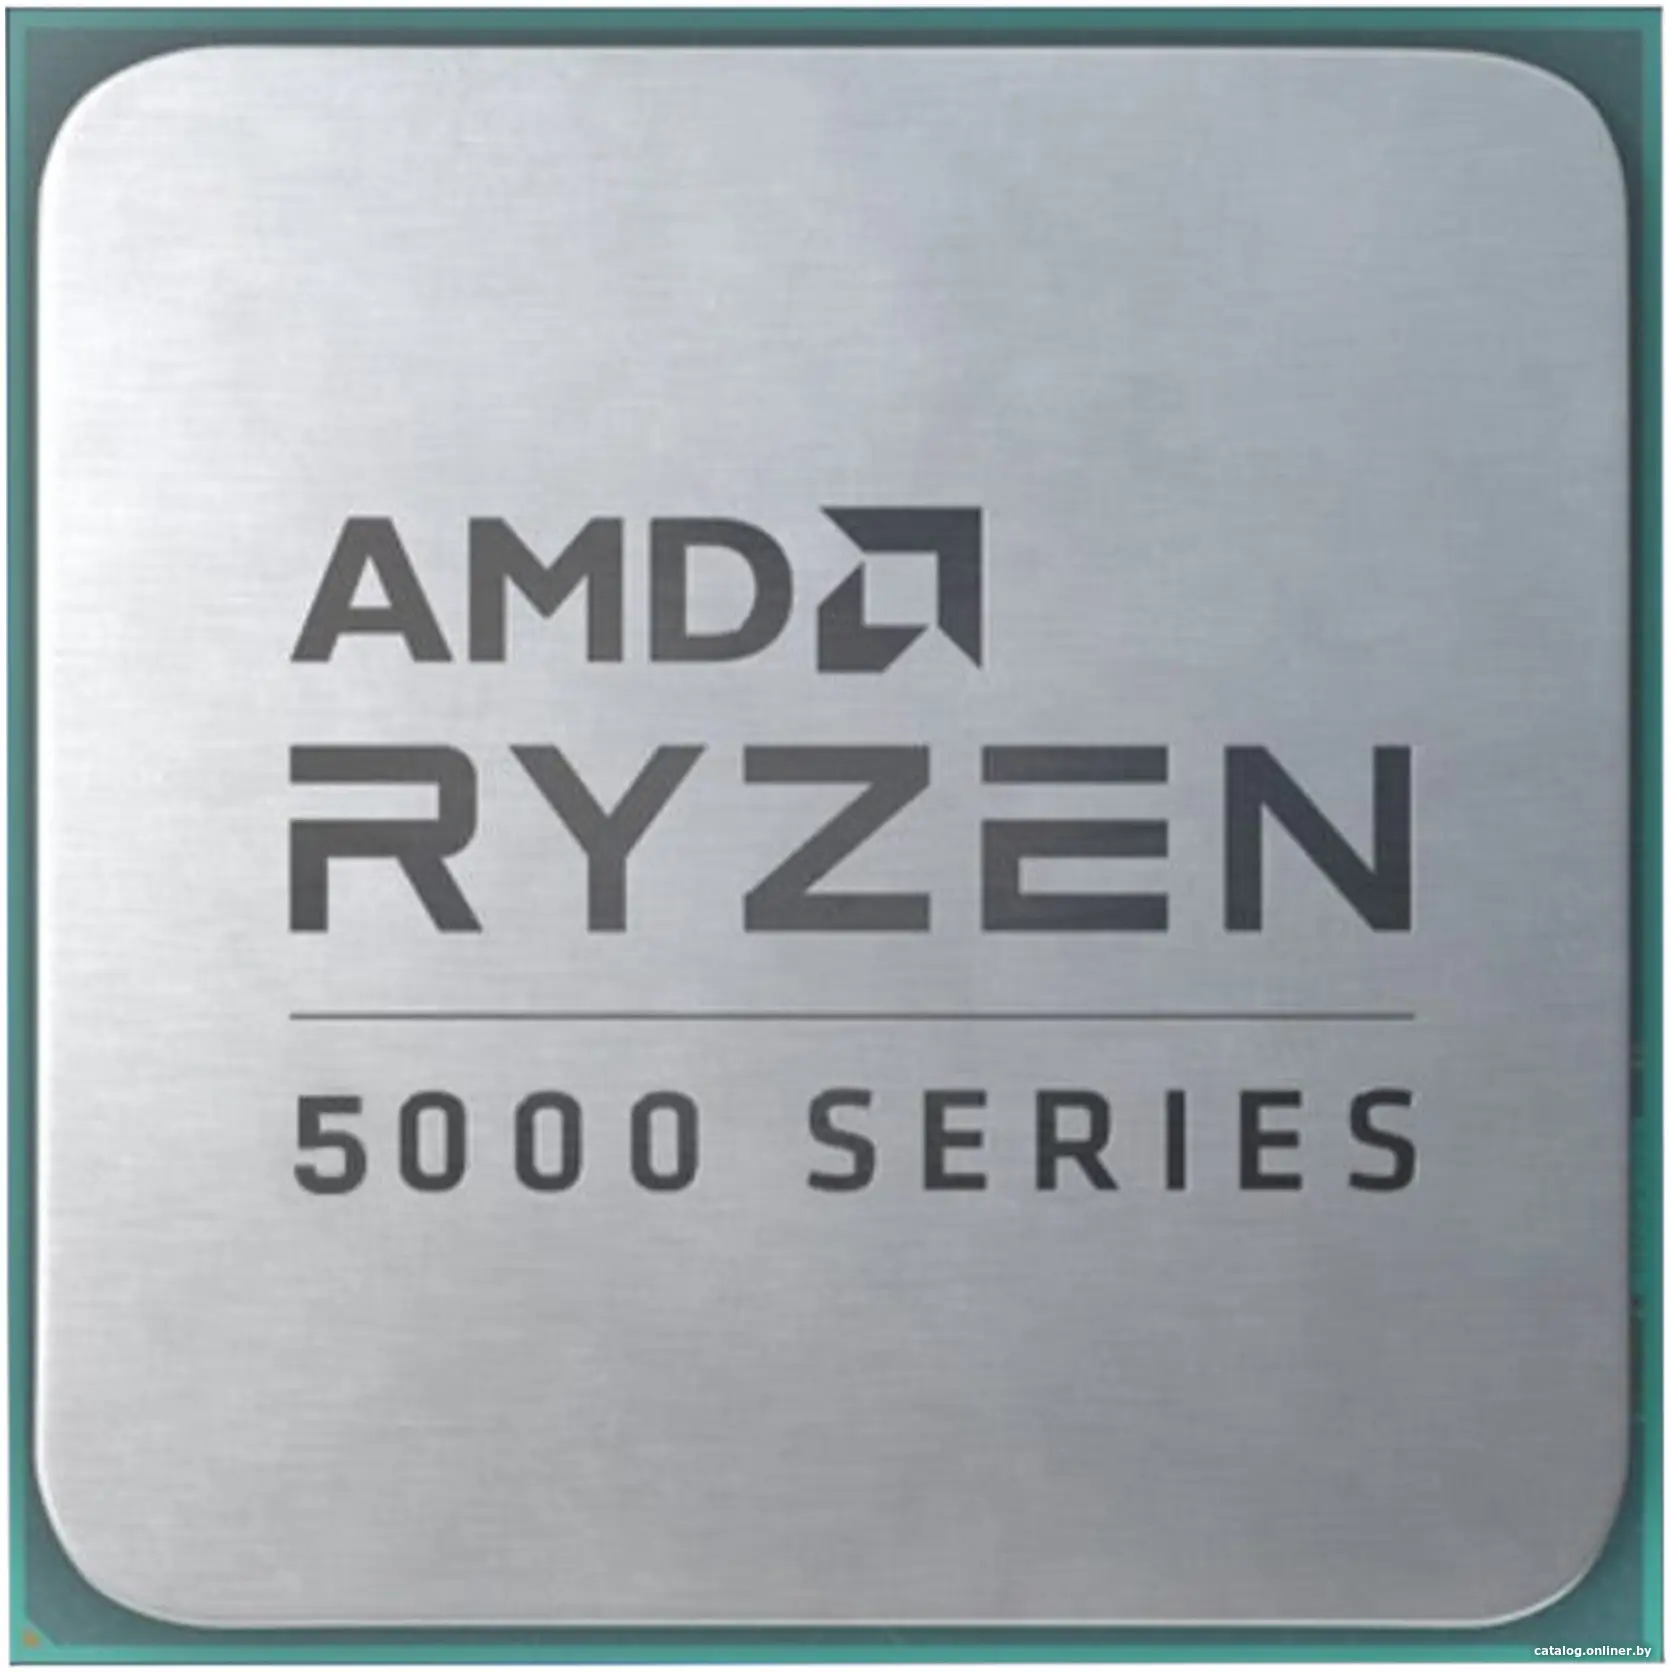 Купить AMD RYZEN 5 5500GT OEM (Cezanne, 7nm, C6/T12, Base 3,60GHz, Turbo 4,40GHz, Vega 7, L3 16Mb, TDP 65W, SAM4), цена, опт и розница